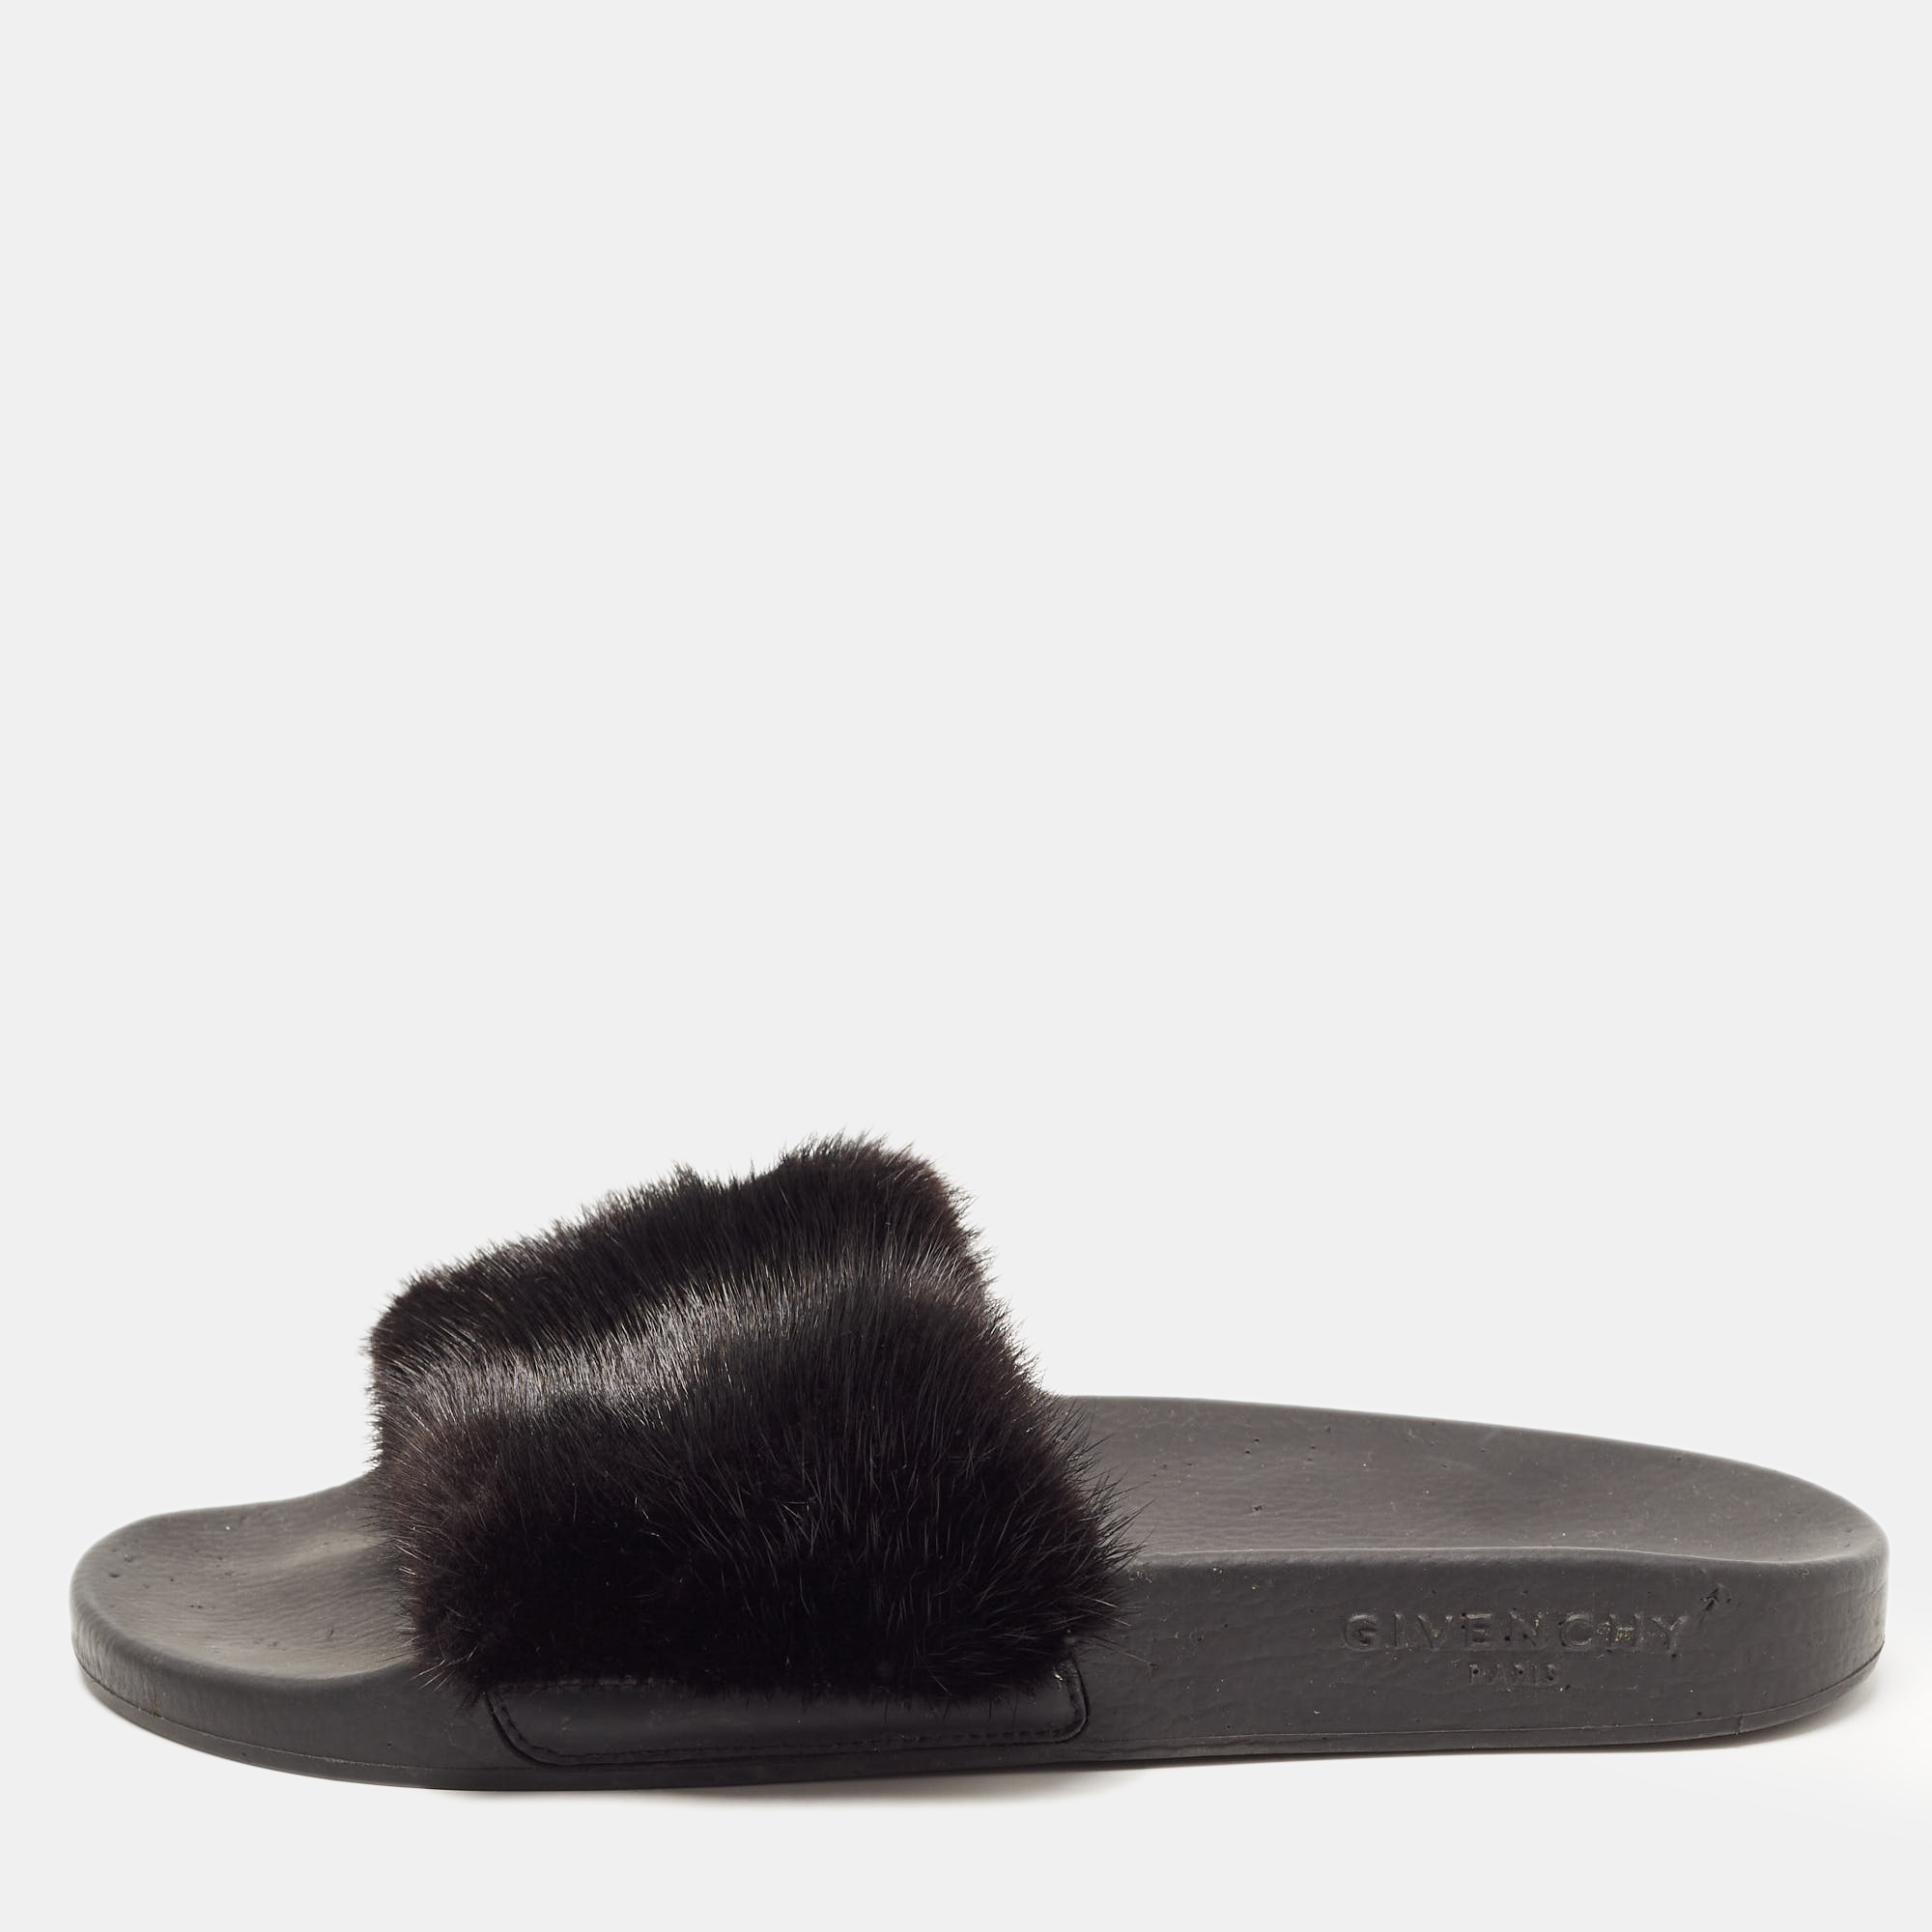 Givenchy black mink fur pool slide sandals size 39